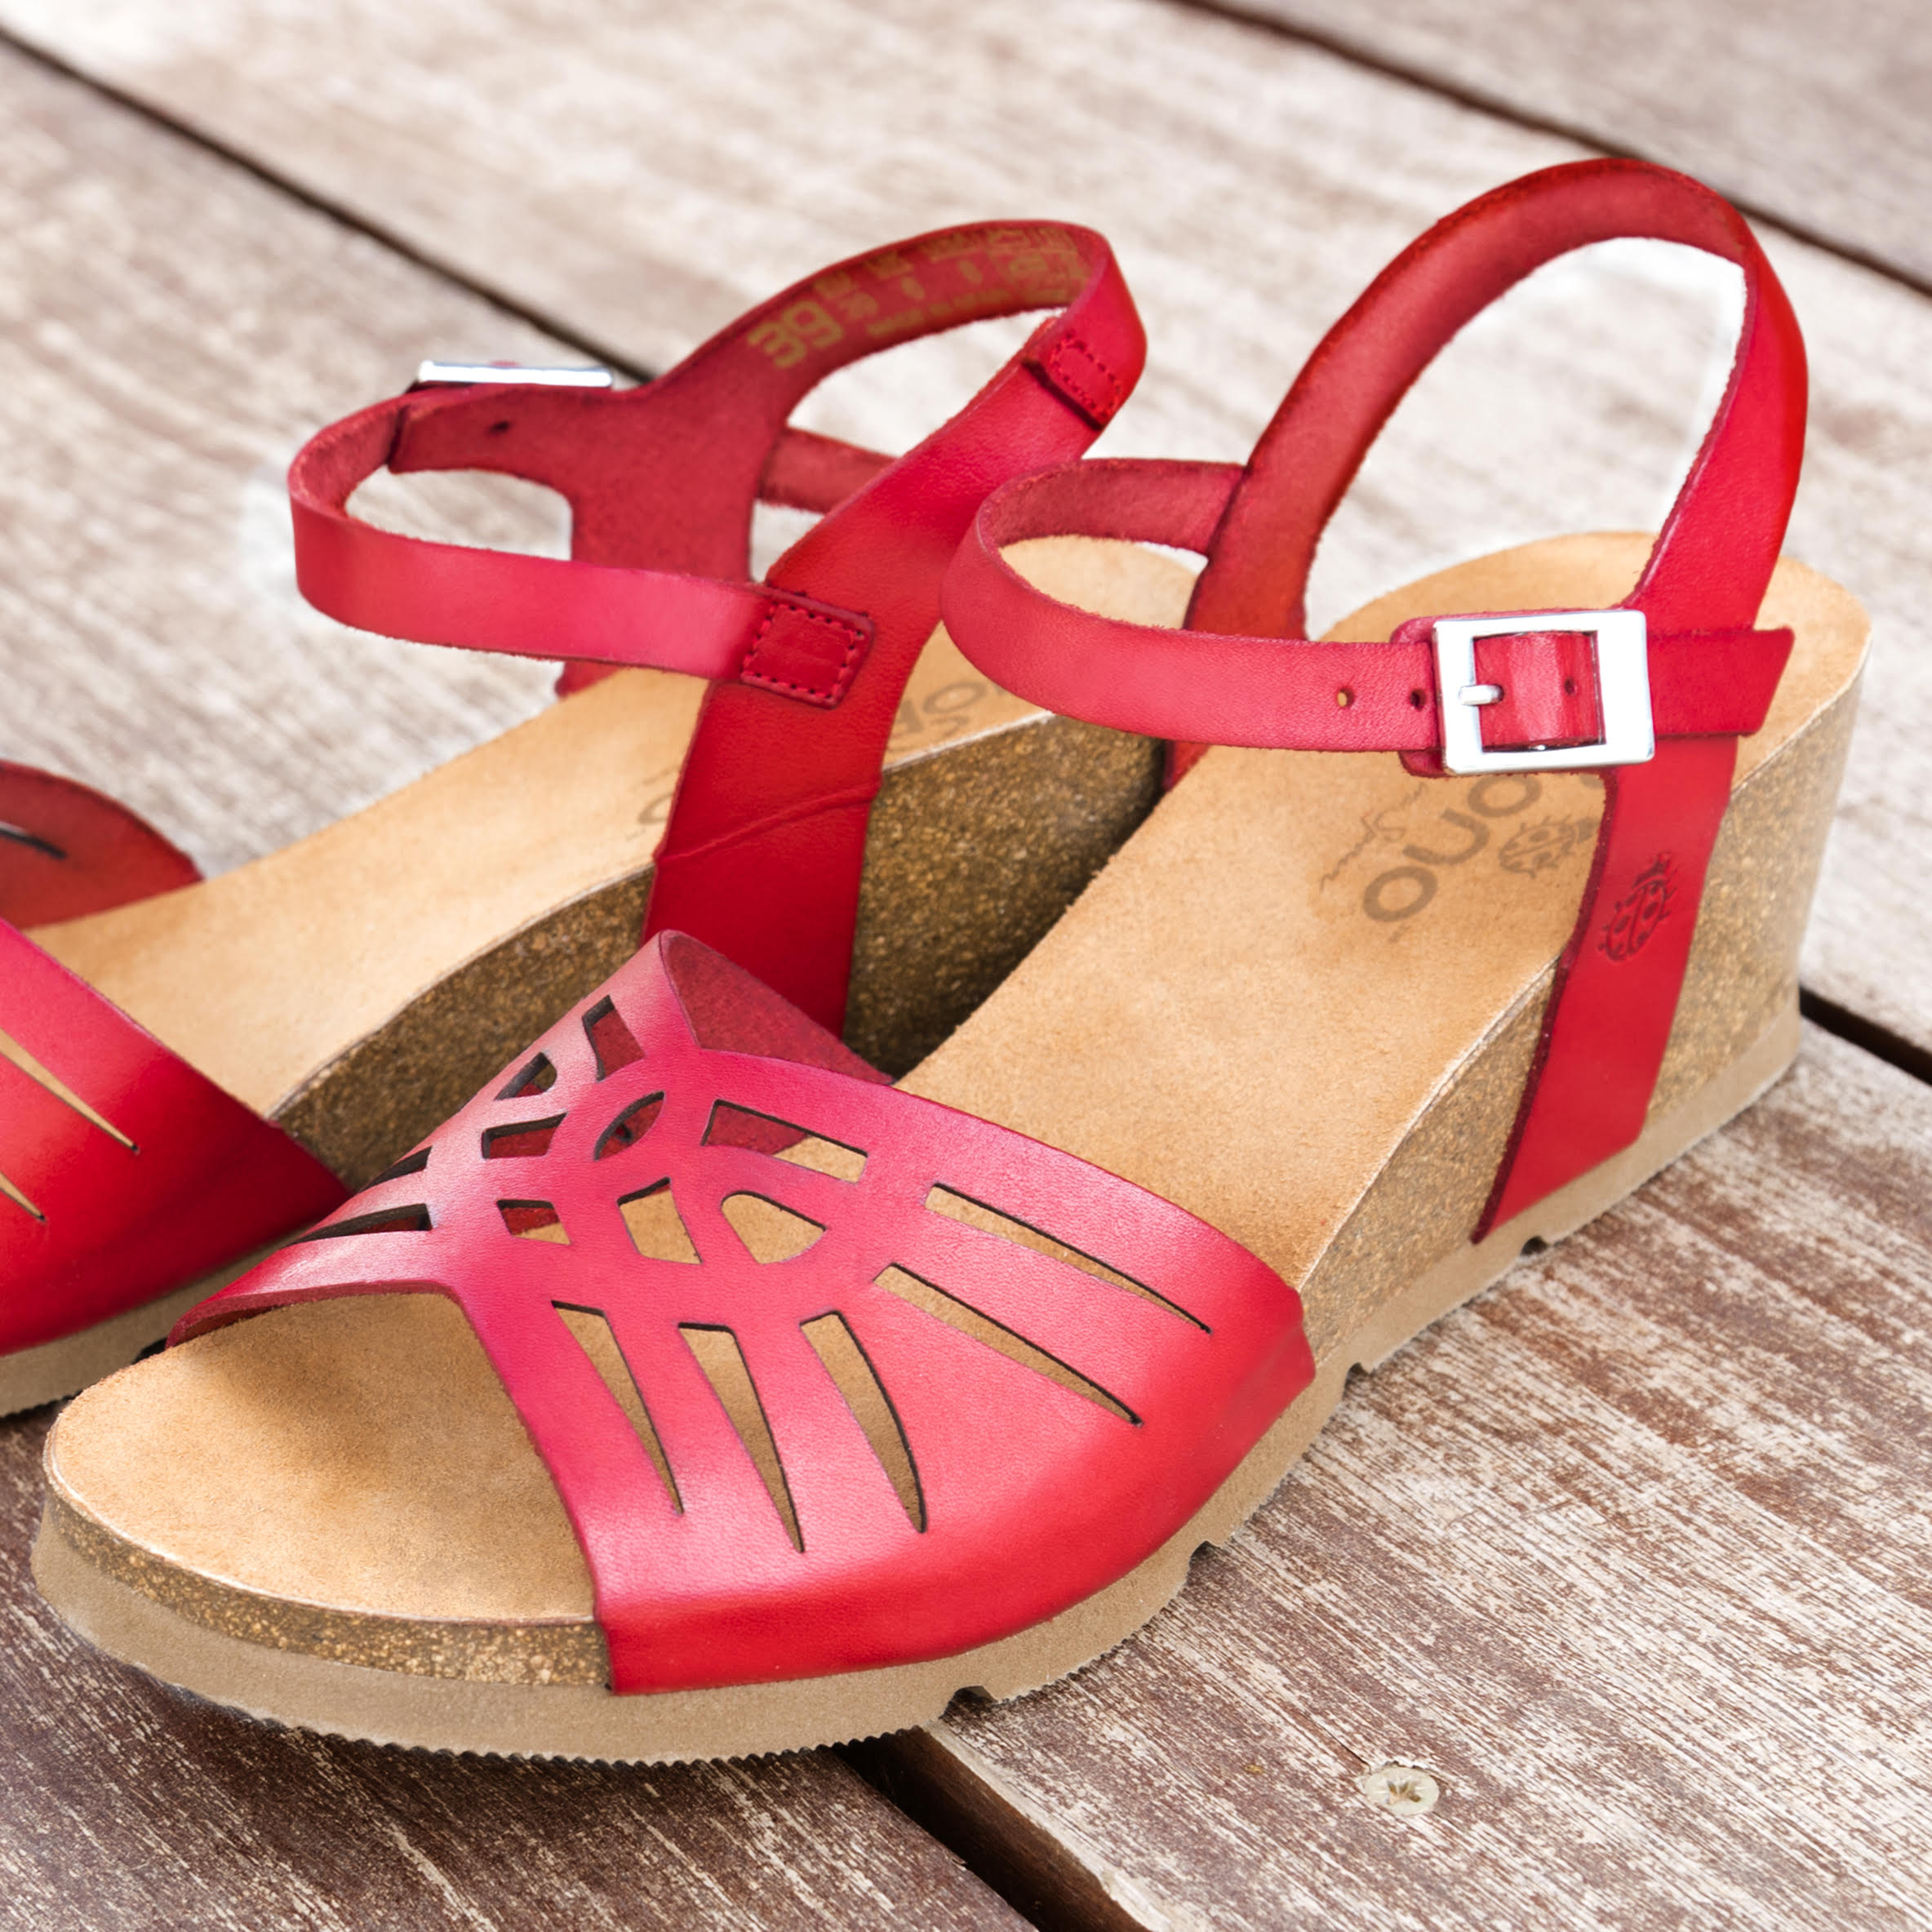 Yokono Shoes on Twitter: "Atrévete con unas sandalias de cuña rojas y convierte un look casual en un look de lo más elegante. CADIZ 097 ▷ https://t.co/ytarahG5Mn #Yokono #Yokonoshoes #Shoes #zapatos #